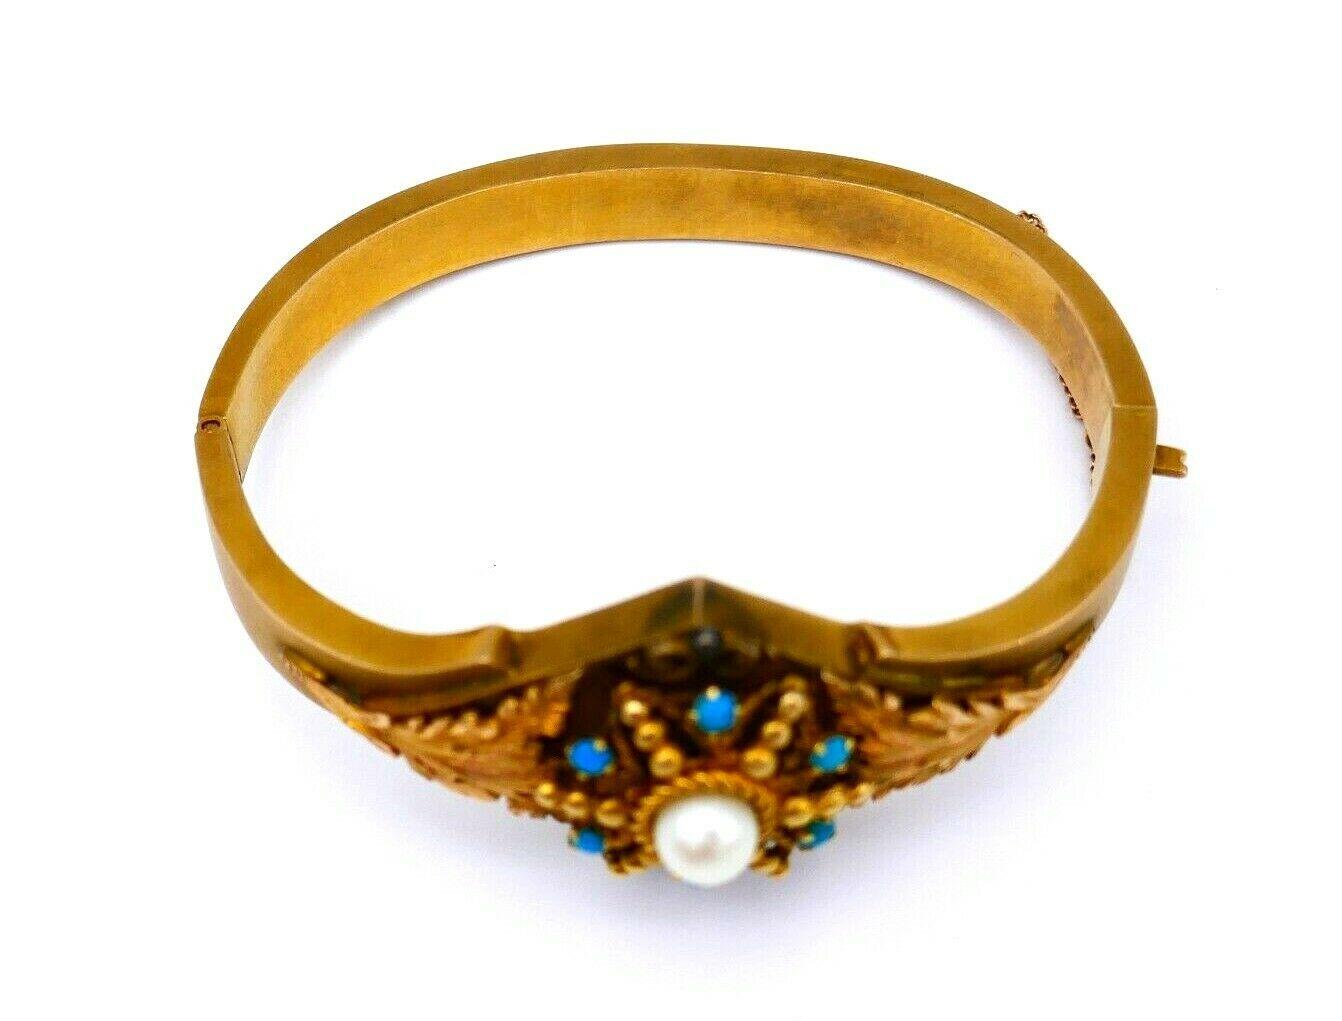 Un beau bracelet bangle ancien en or jaune 14k, perle et turquoise. La partie ornementale comporte des éléments dorés texturés en forme de feuilles et des perles dorées. 
Estampillé de la marque du fabricant et d'un poinçon pour l'or 14k.
Mesures :